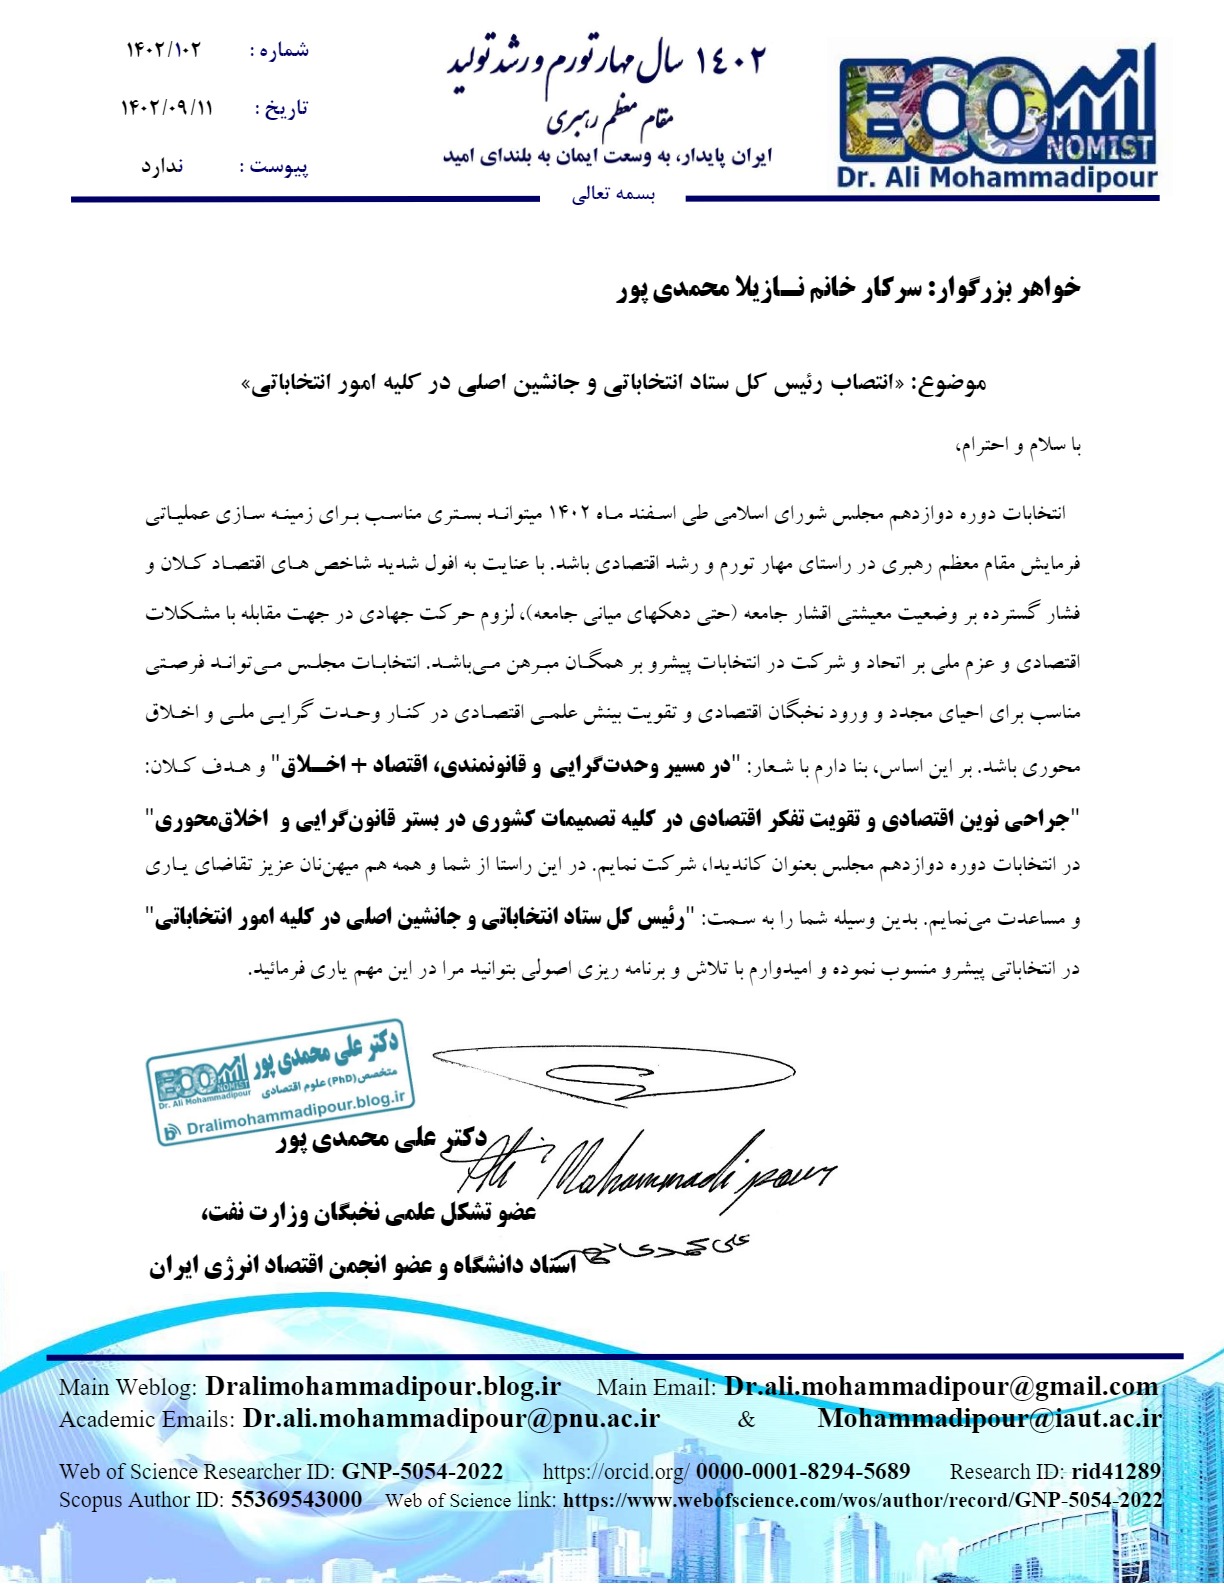 رئیس کل ستاد انتخاباتی و جانشین اصلی در کلیه امور انتخاباتی دکتر علی محمدی پور